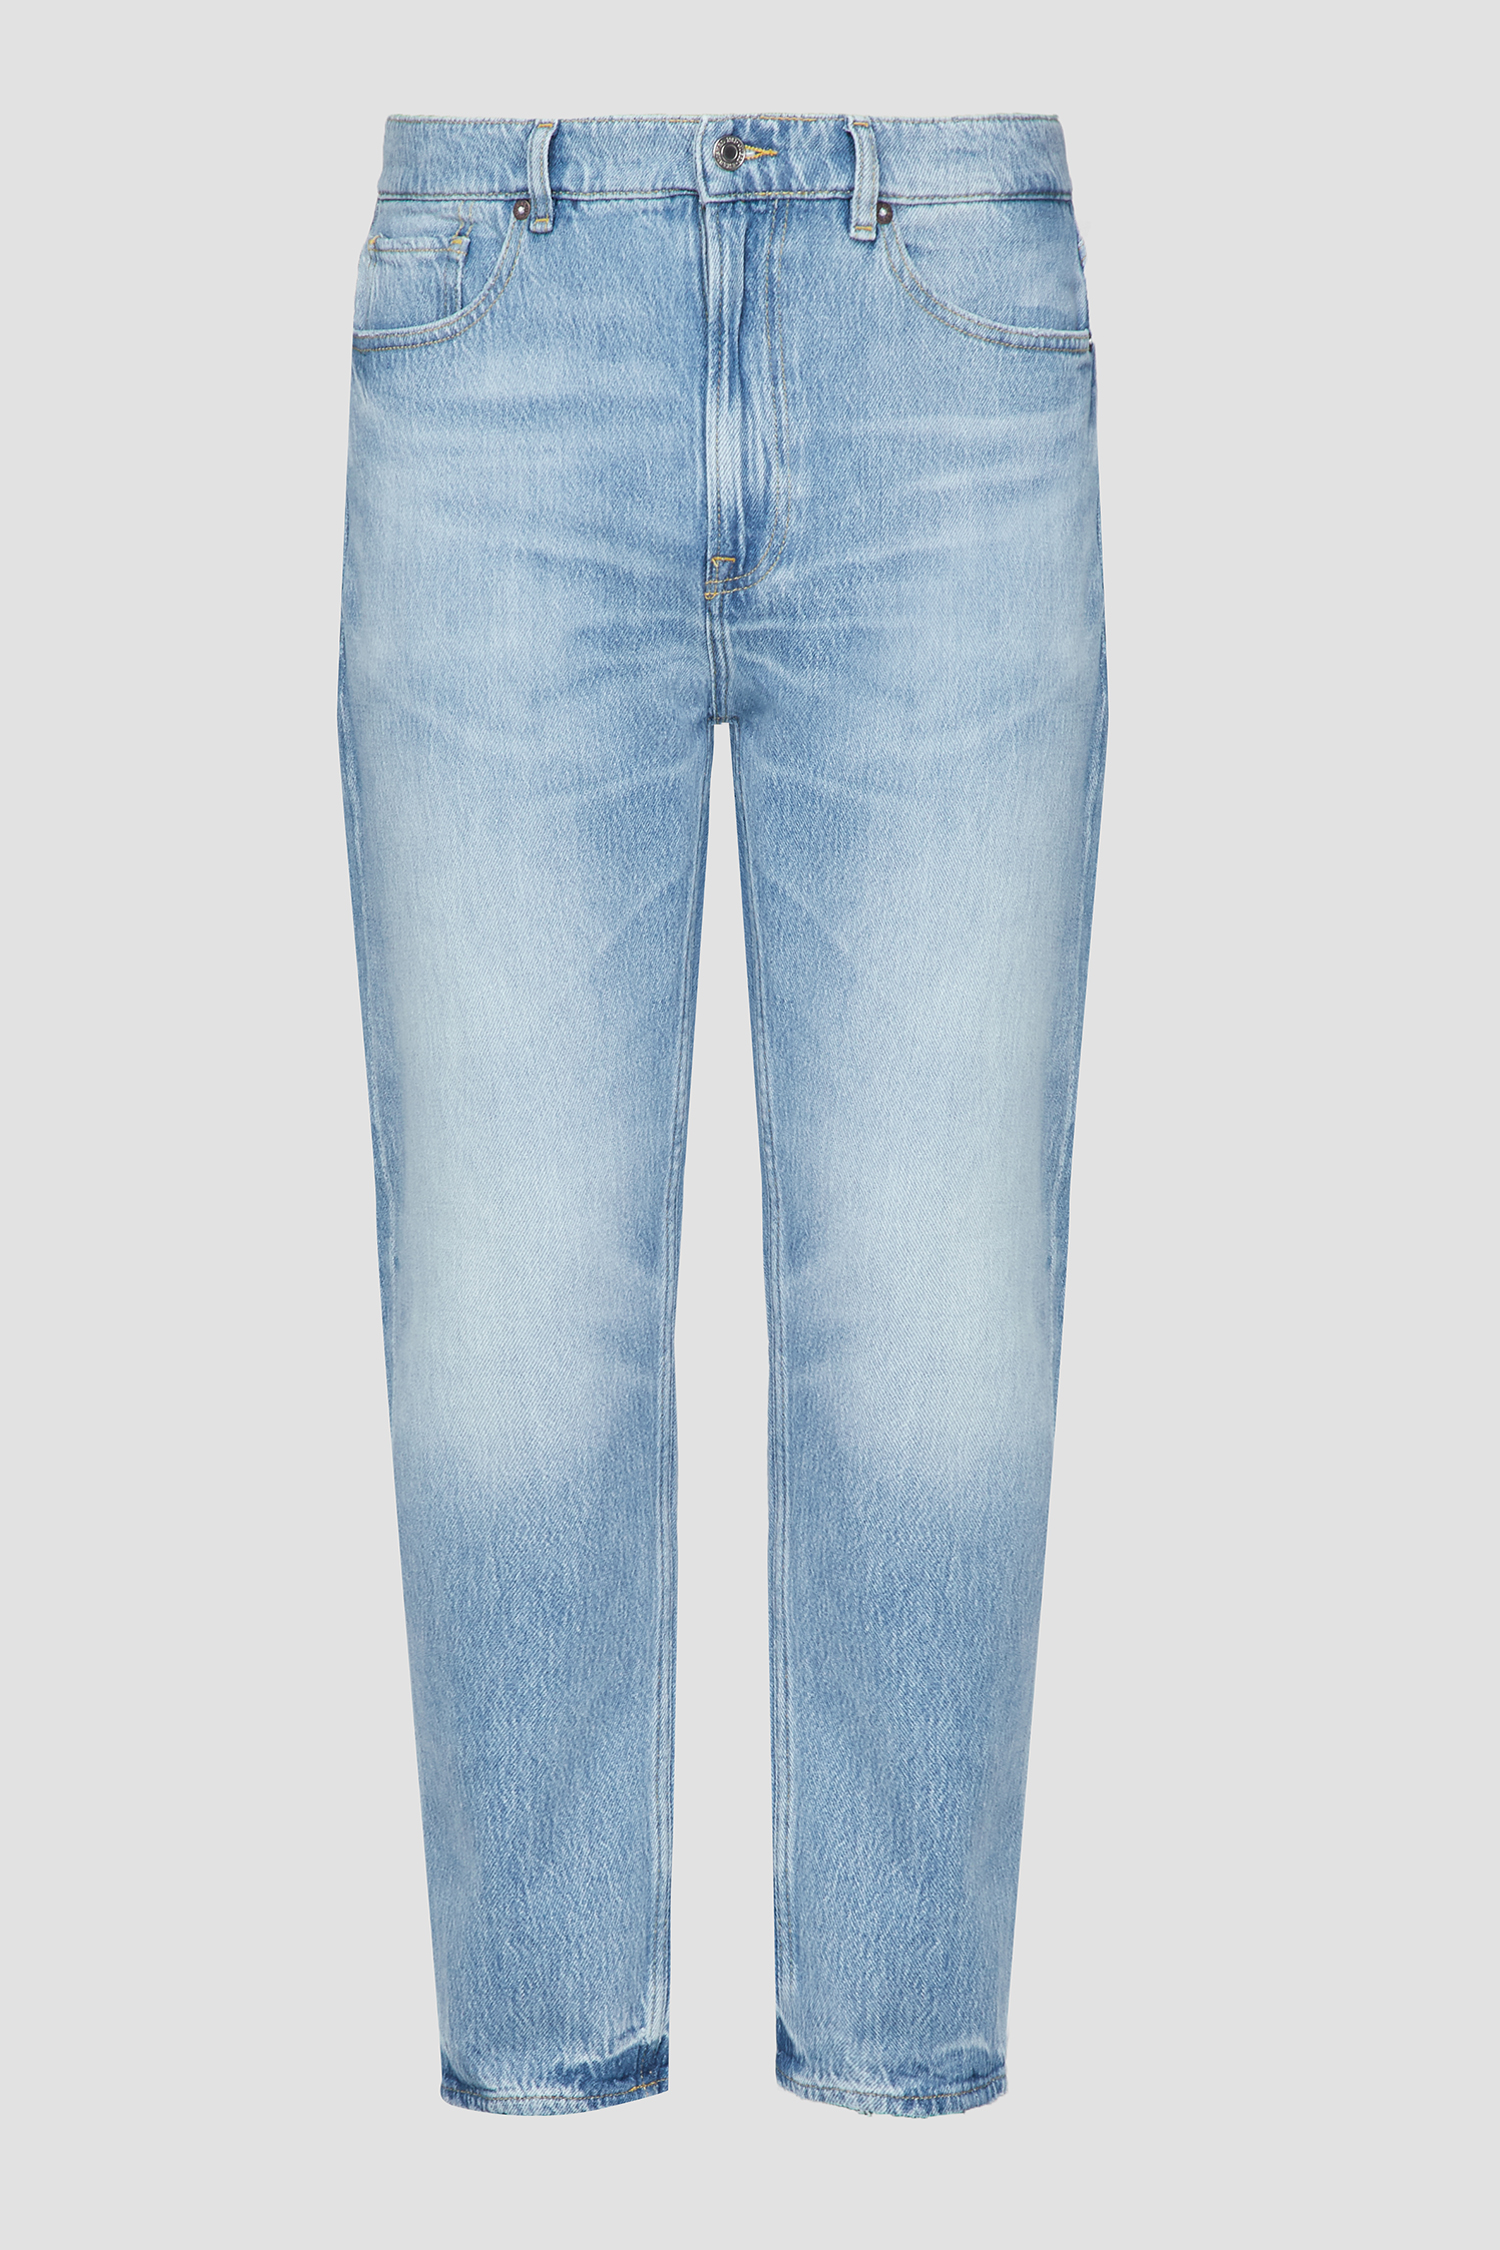 Мужские голубые джинсы Guess M3GA14.D4Z62;THMI